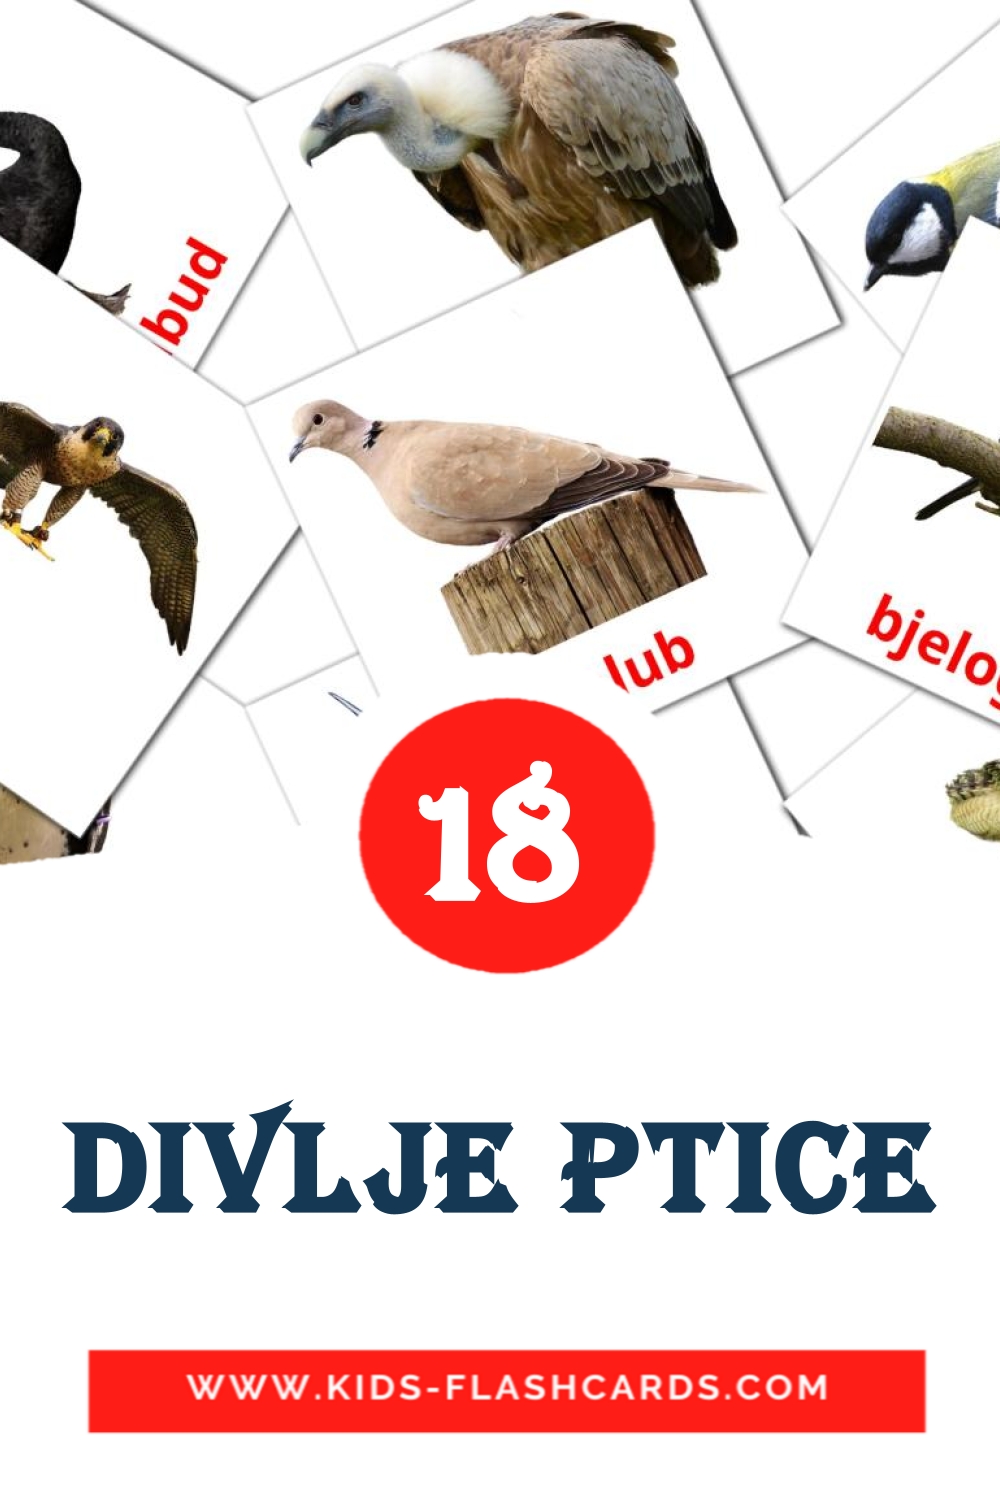 18 cartes illustrées de divlje ptice pour la maternelle en bosniaque